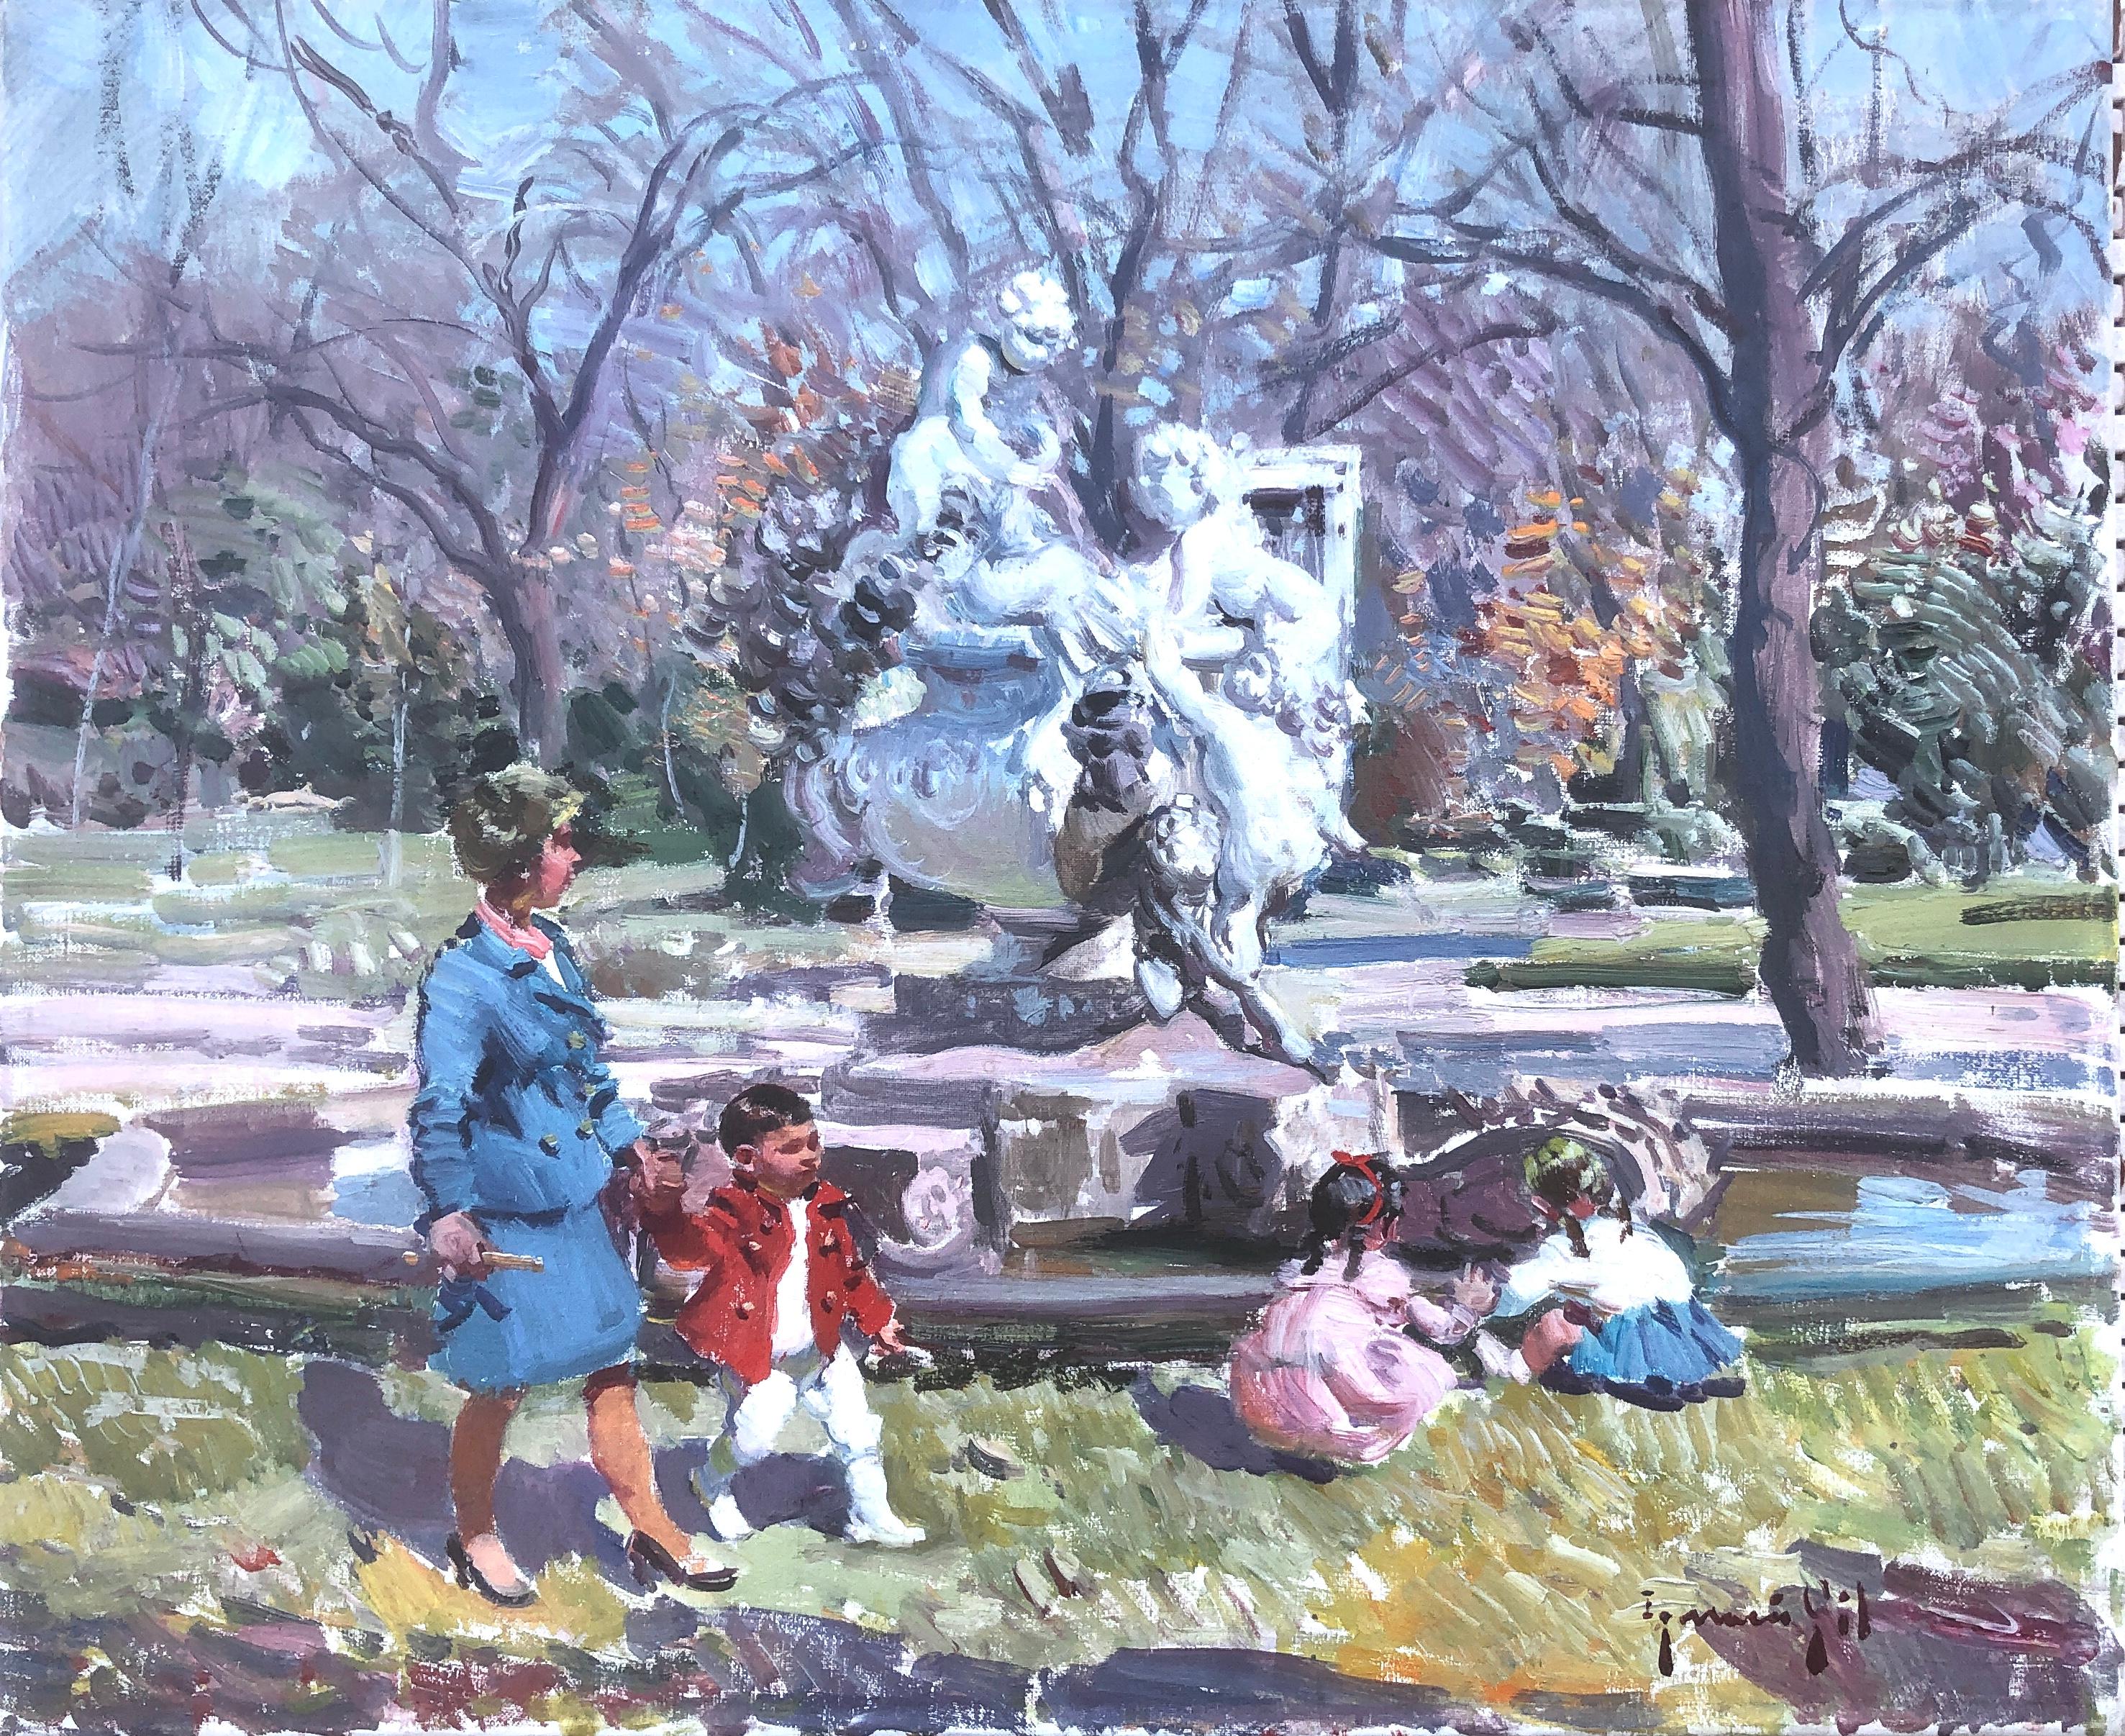 Landscape Painting Ignacio Gil Sala - Les enfants jouant dans le parc de Barcelone, Espagne, peinture à l'huile sur toile